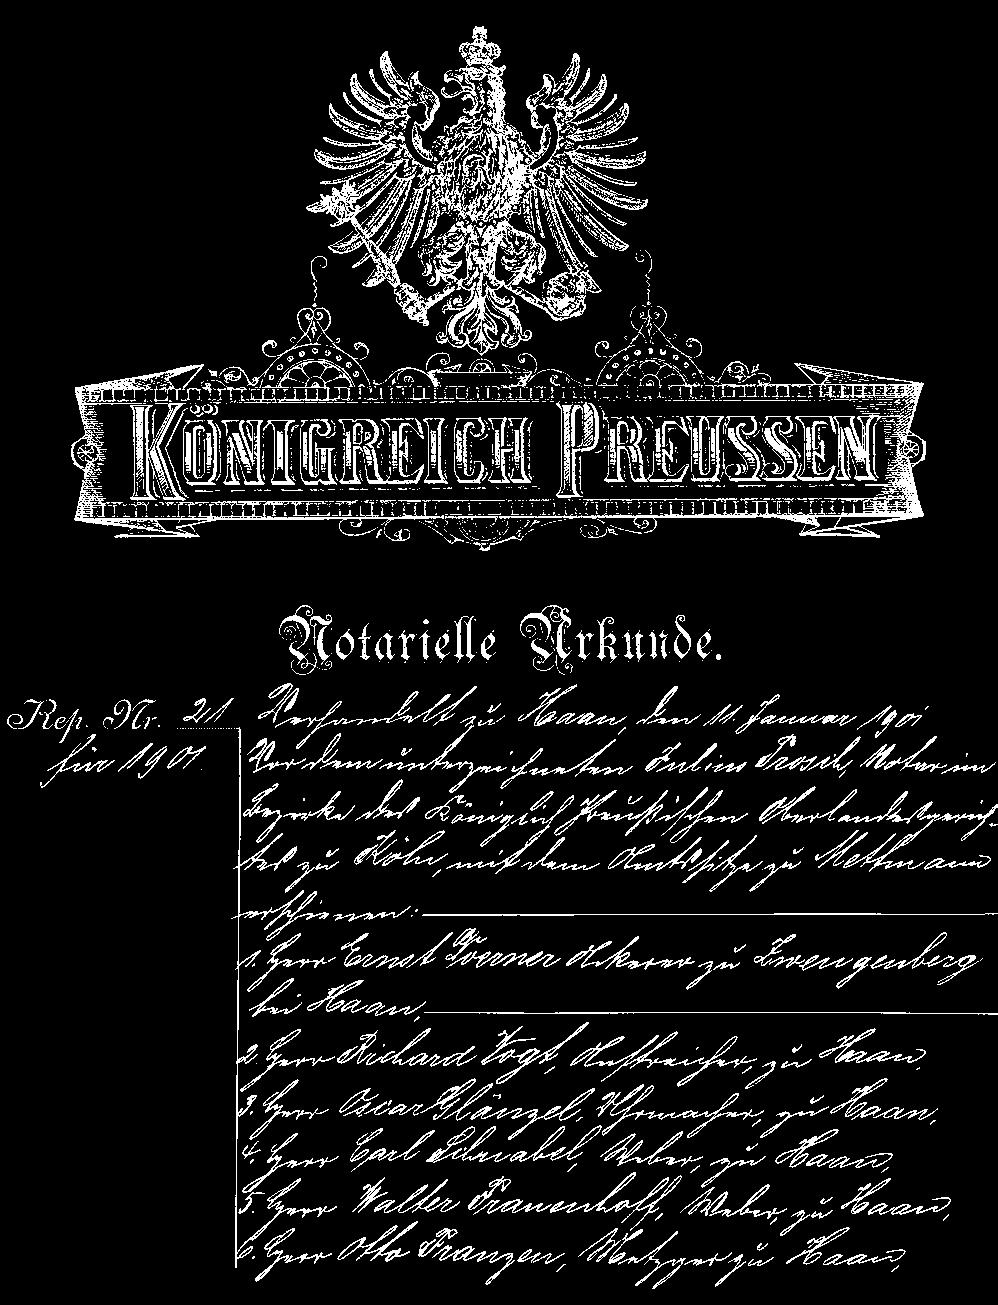 164 Mit dieser Urkunde wurde der Grundbesitz von den Herren Dörner und Vogt auf den Haaner Turnverein1863 überschrieben Die Pläne reifen und die Entscheidung fällt in der Mitgliederversammlung vom 28.